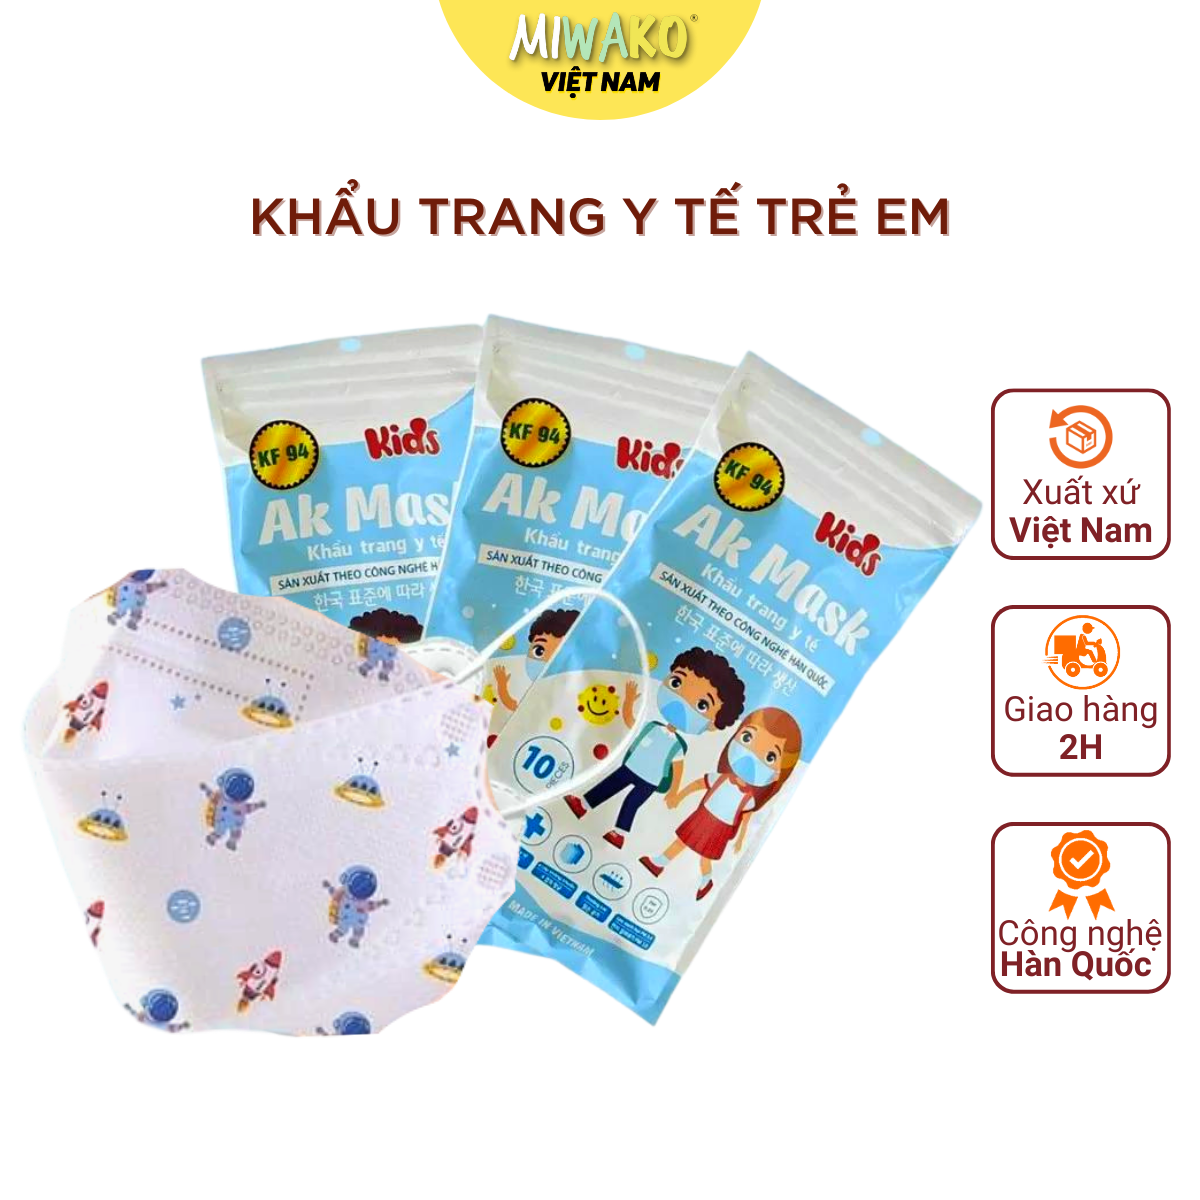 Khẩu Trang Cho Bé KF94 4D Mask Kids Túi 10 Chiếc Cho Trẻ Từ 3-12 Tuổi Công Nghệ Hàn Quốc Kháng Bụi Mịn Và Virus Đạt Tiêu Chuẩn ISO Của Bộ Y Tế